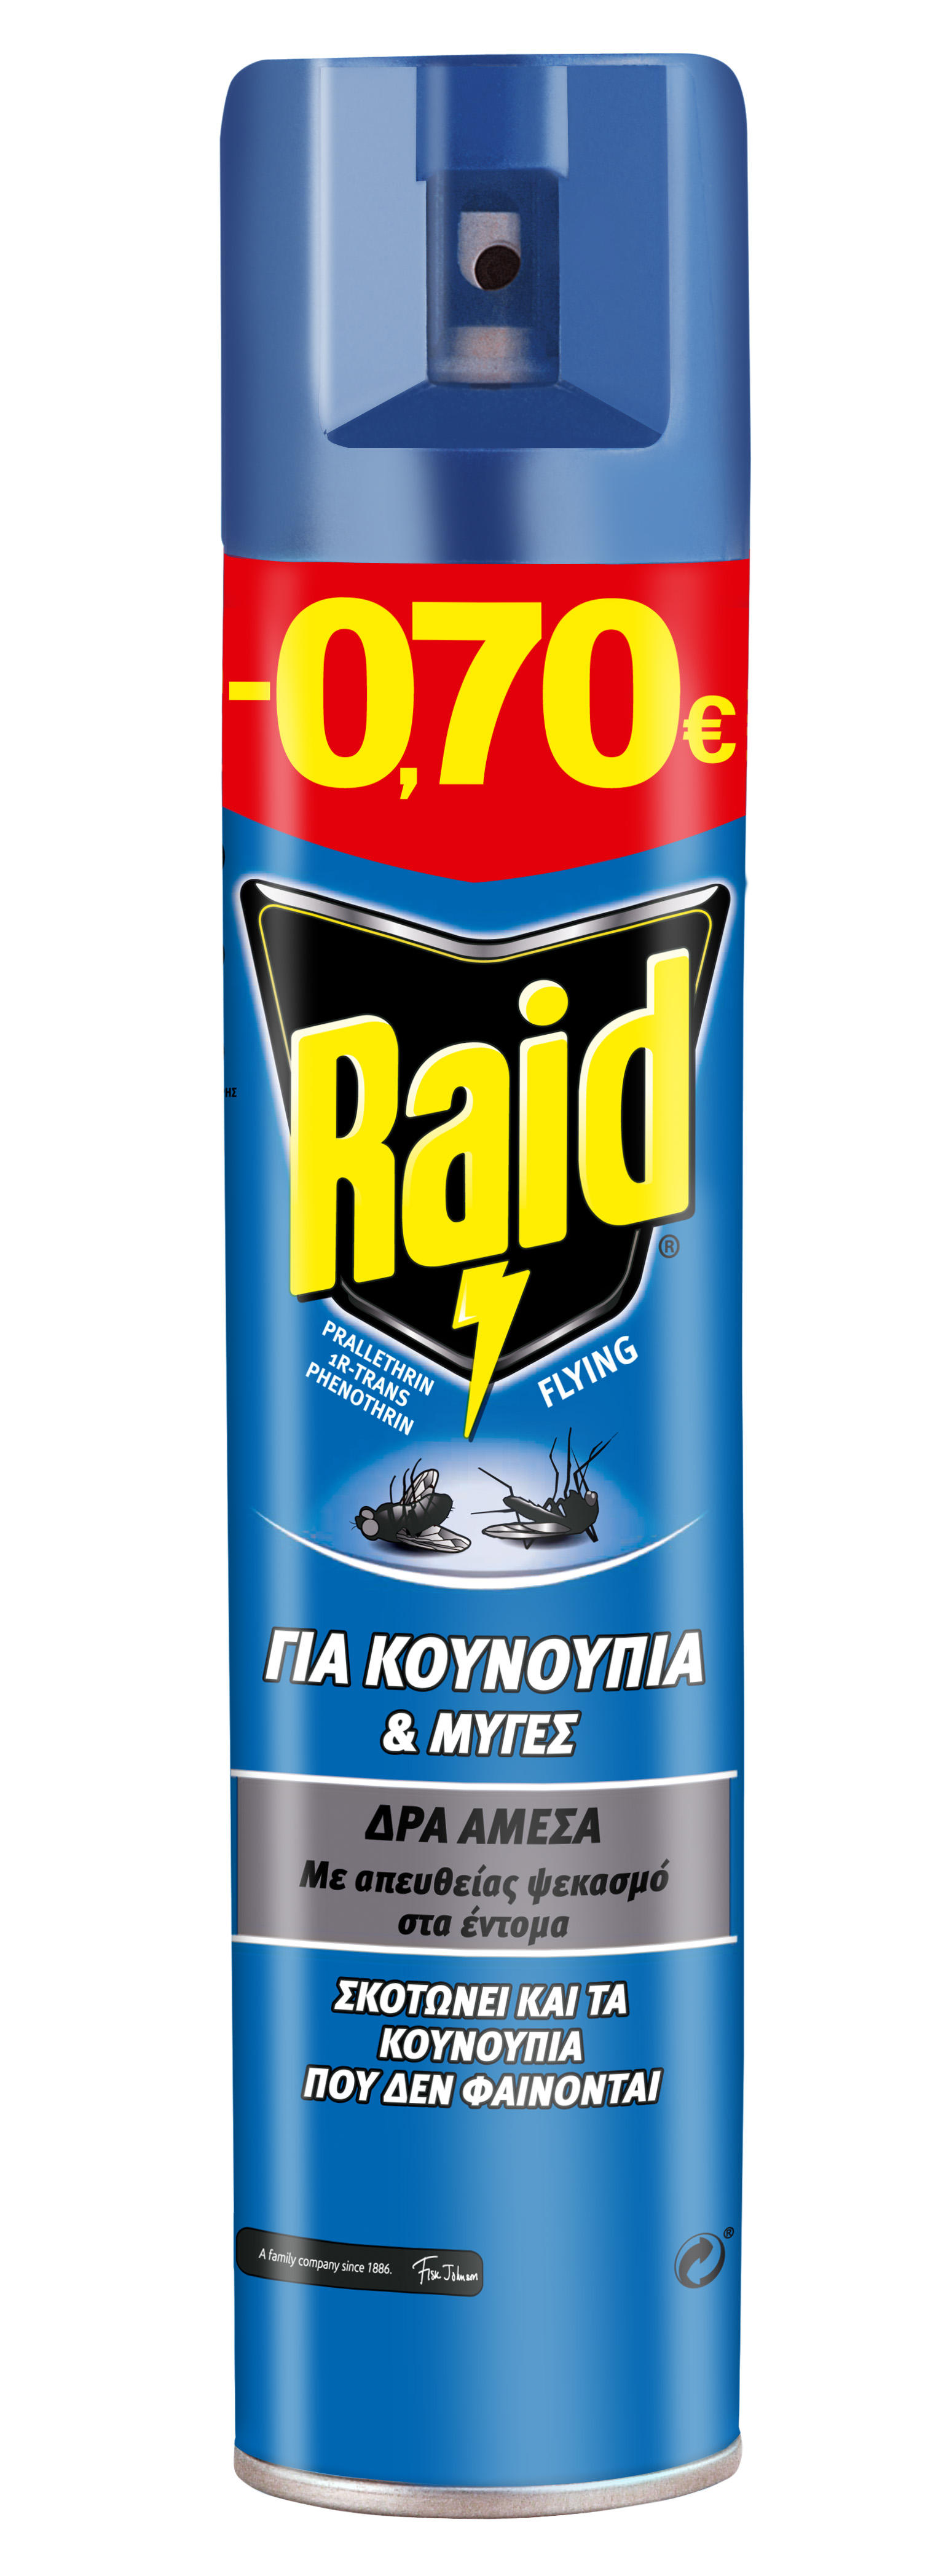 RAID A/SOL FIK 300ML-0.70E